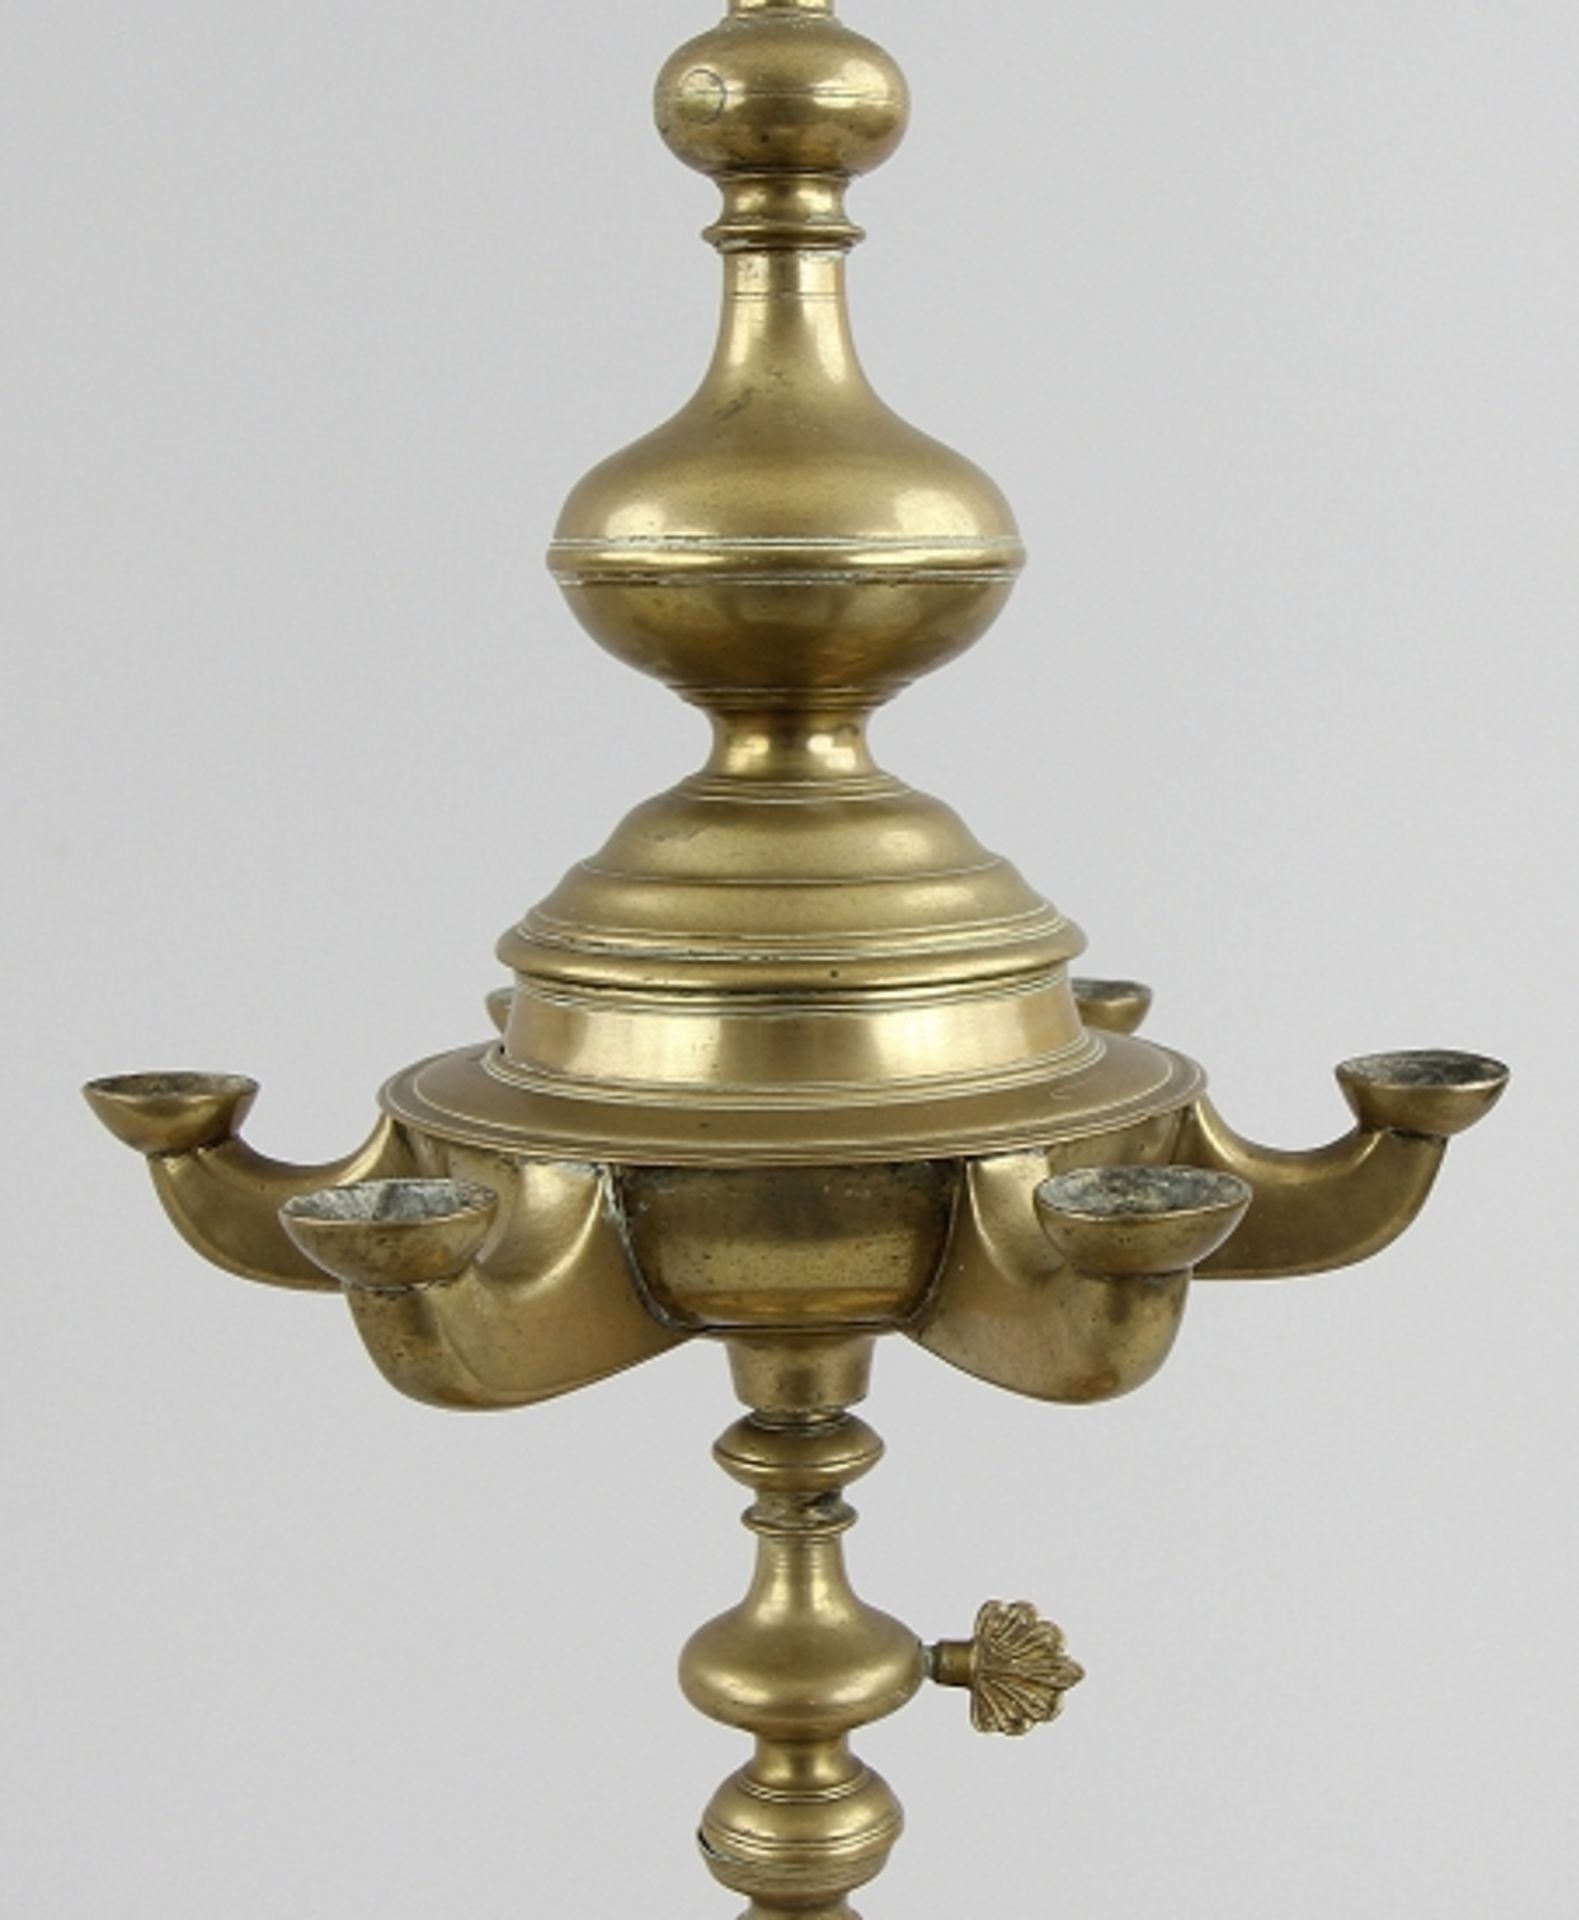 Seltene Öllampe, sog. "Florentiner Lampe" - Image 2 of 5